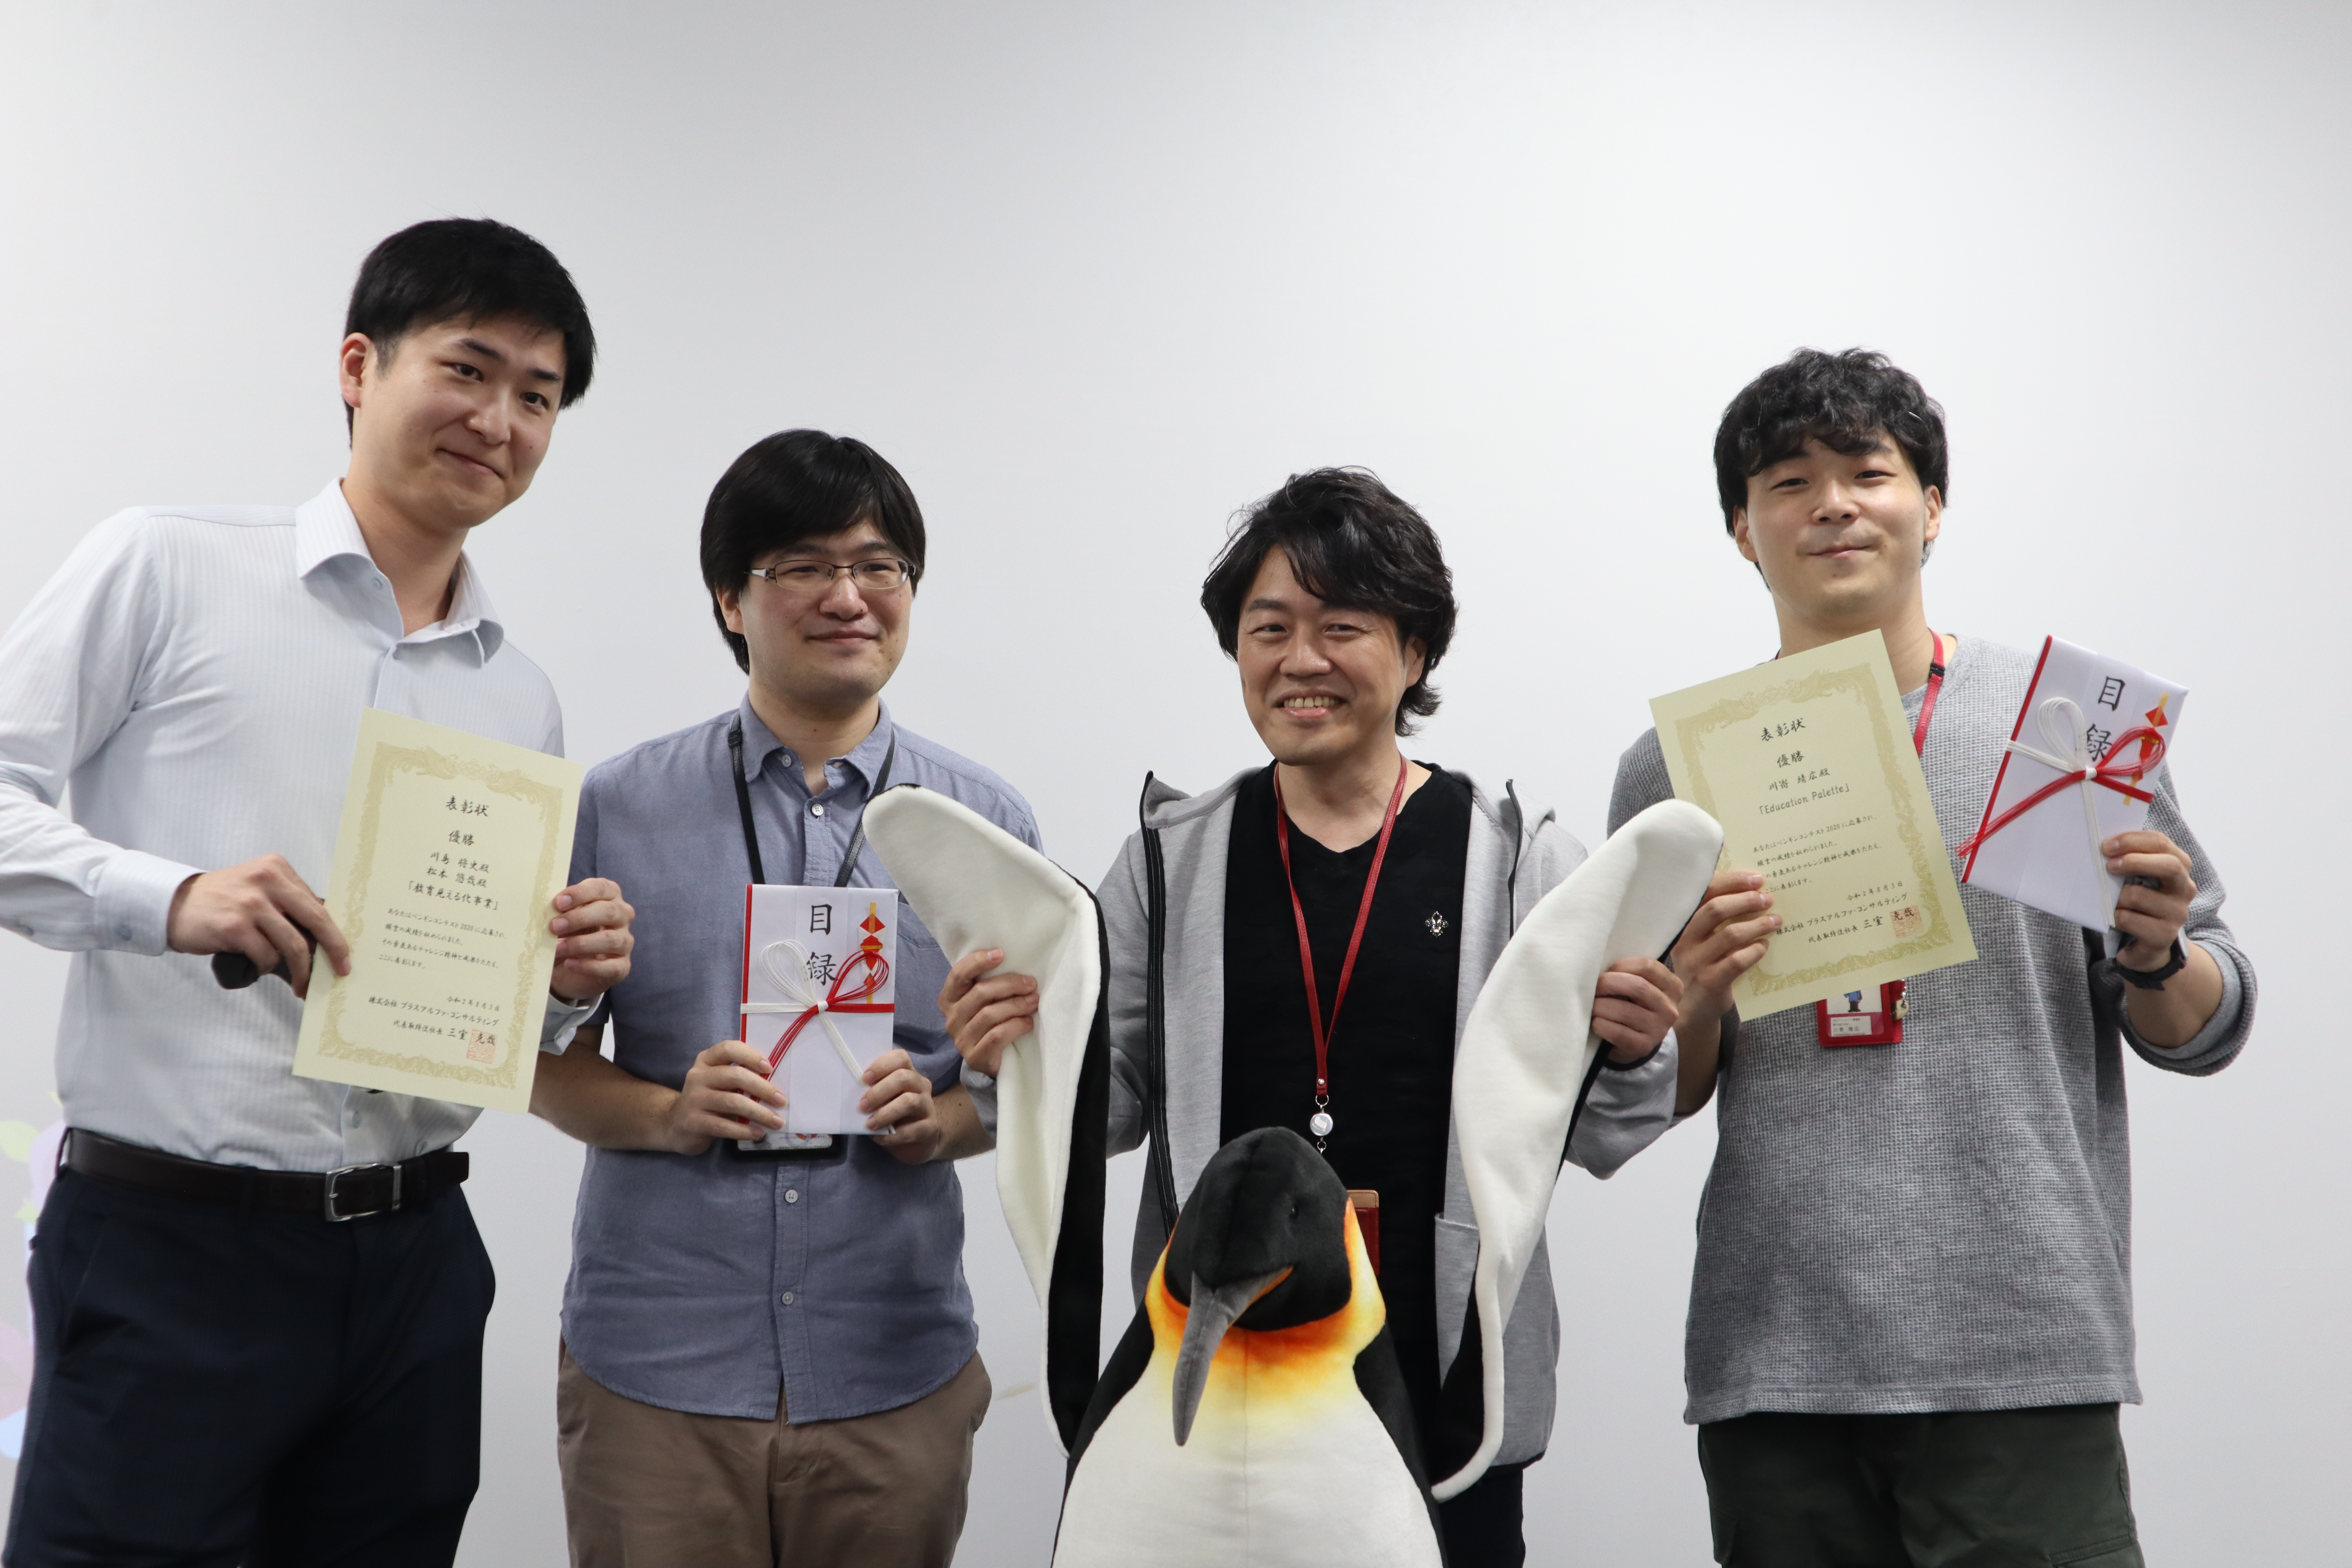 新規事業コンテスト、通称「ペンギンコンテスト」の入賞者表彰式。
新卒1年目のメンバが入賞し、事業化へ進めているケースもある。